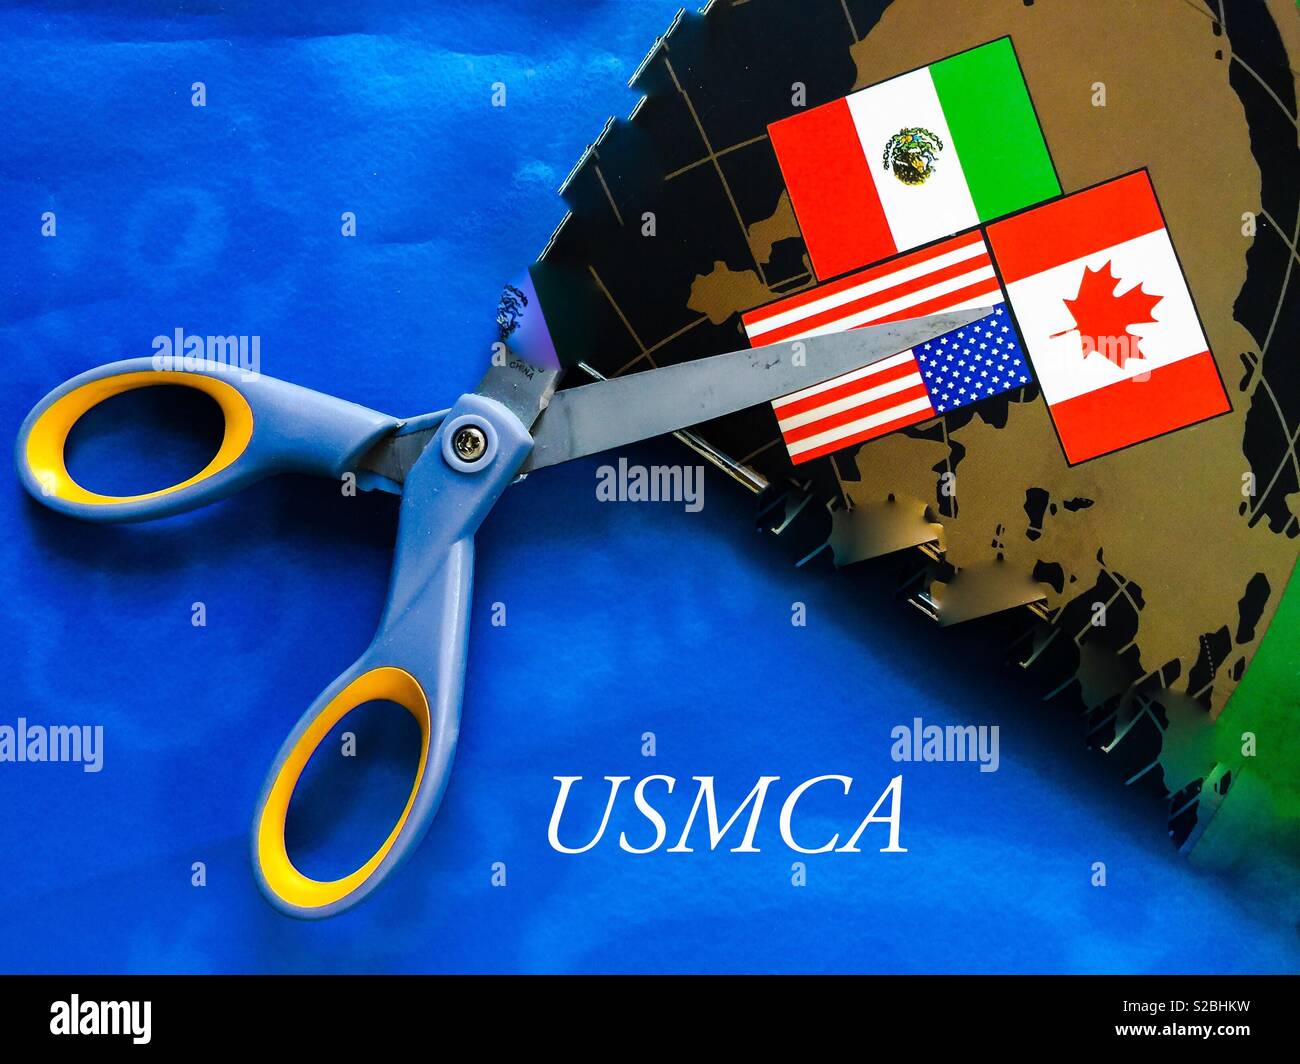 Die neue NAFTA: Konzeptionell. Jetzt USMCA genannt. Alte Vereinbarung wird zerschnitten. Zeigt Zerstörung, kreative Zerstörung, Schreddern. Der größte Handelsblock der Welt. Visualisierung. Stockfoto